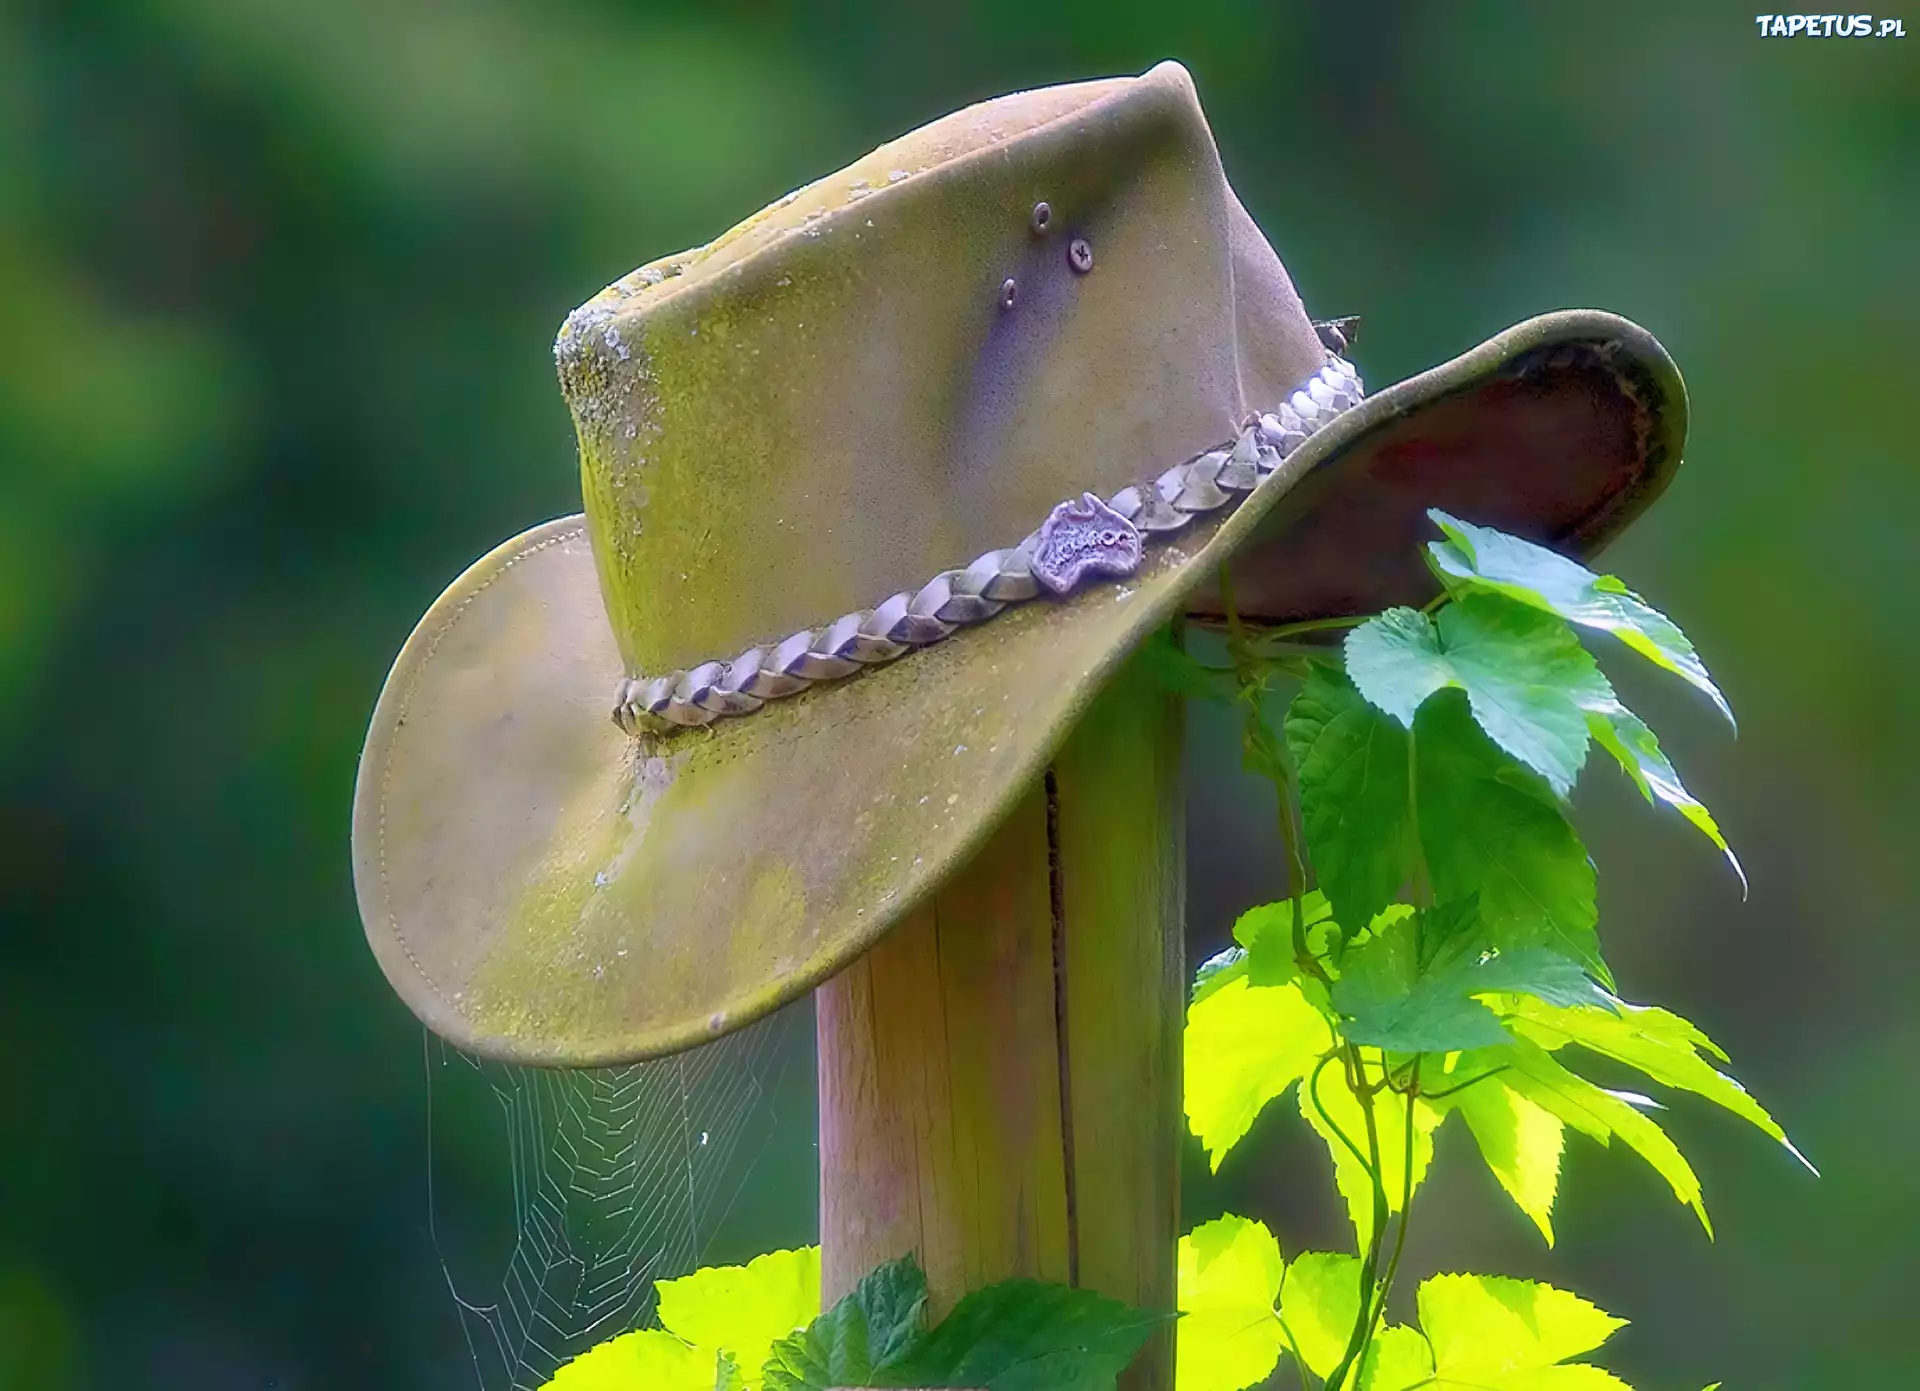 Обои шляпа. Шляпа ковбоя. Обои со шляпой. Треугольная шляпа обои. Богомол в ковбойской шляпе.